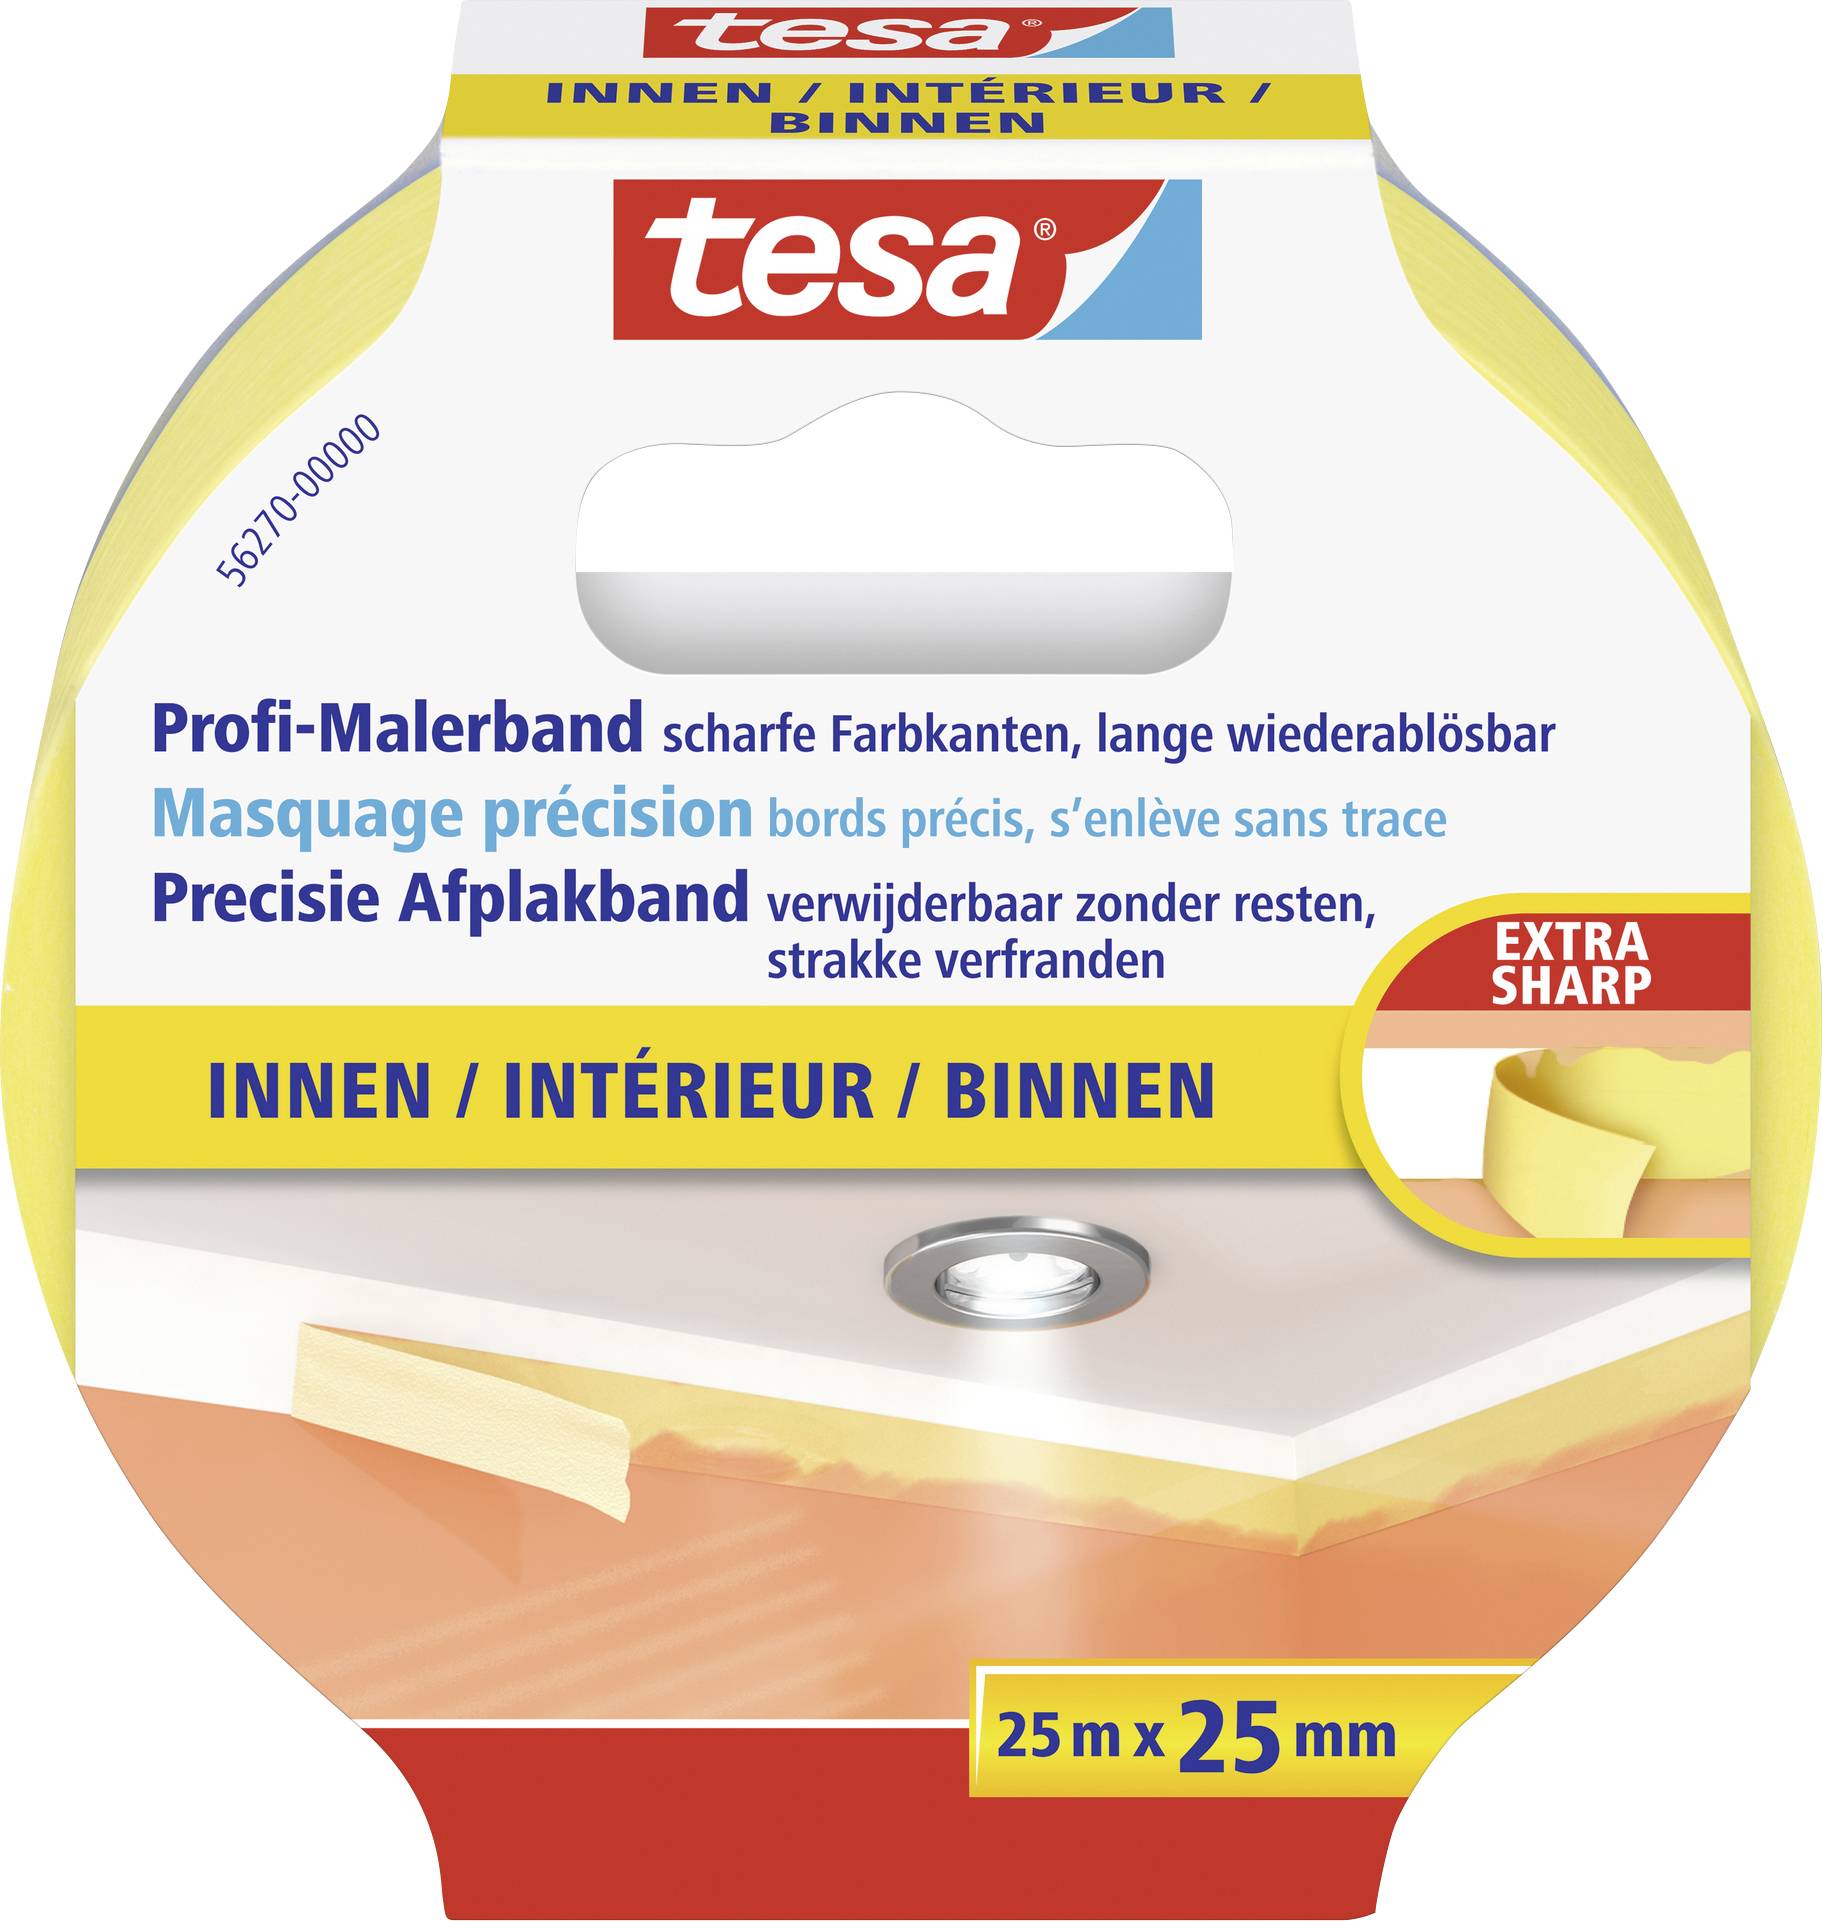 TESA PRECISION INDOOR 56270-00000-01 Kreppband tesa® Gelb (L x B) 25 m x 25 mm 1 St.